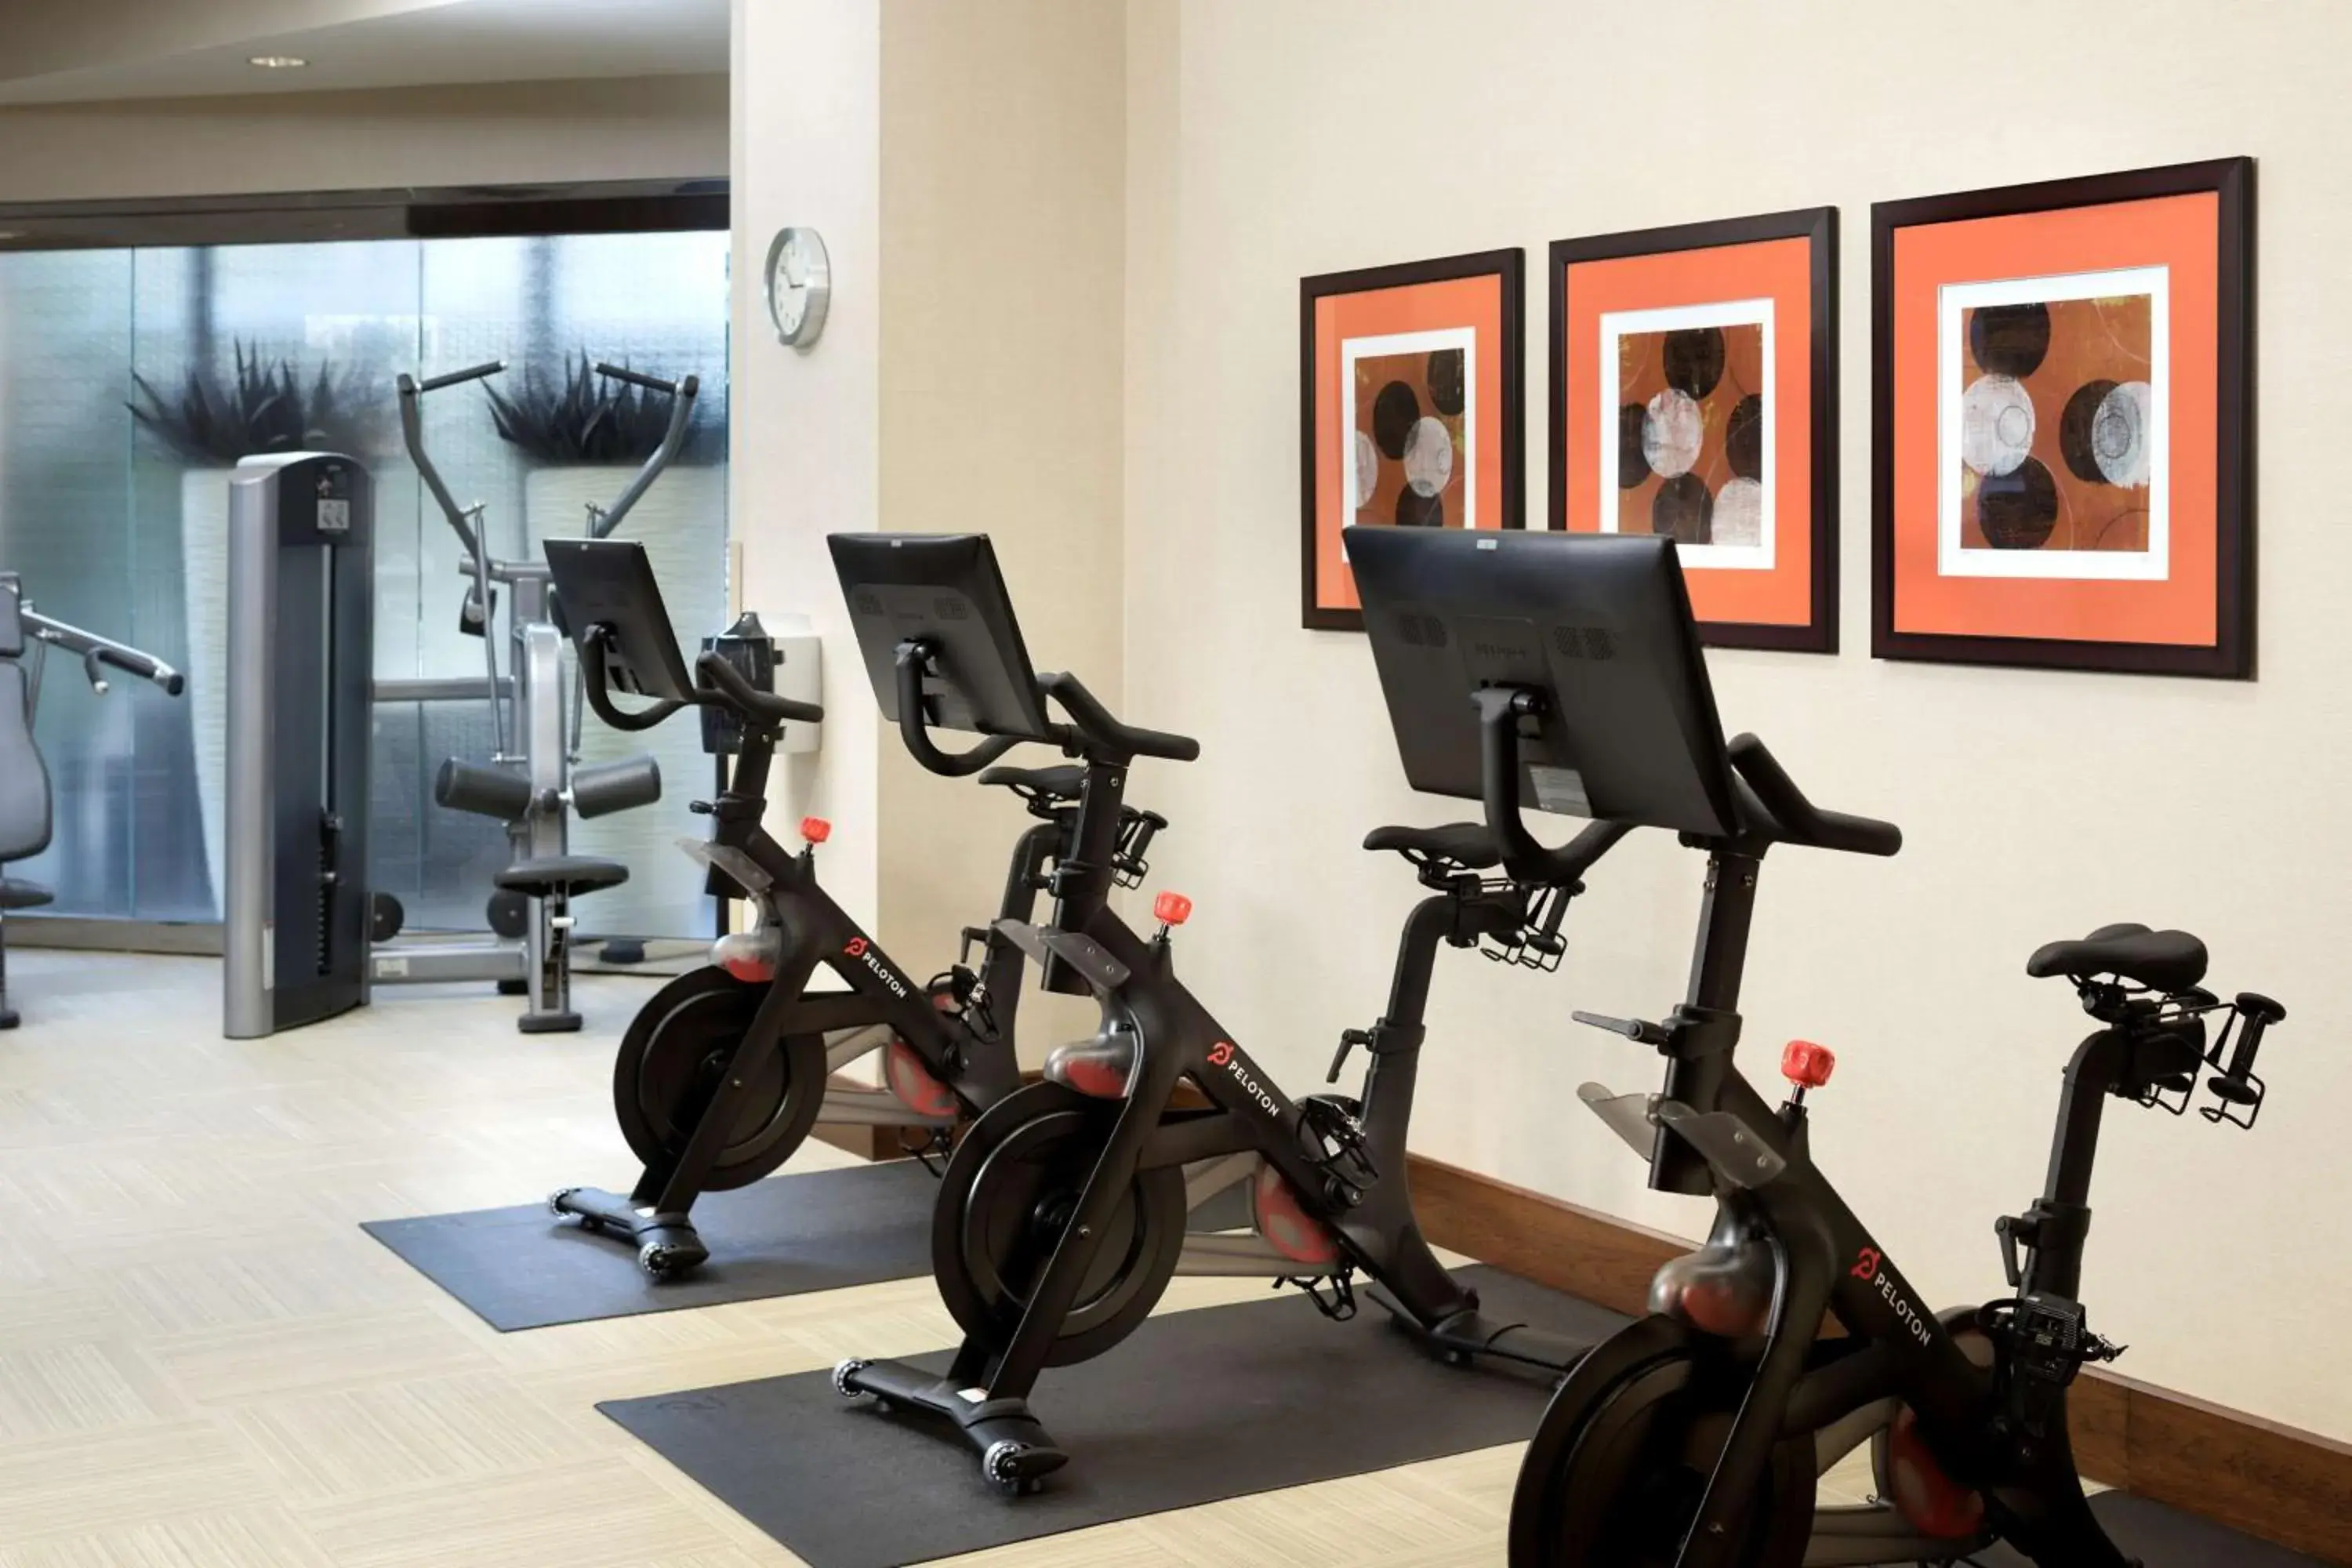 Spa and wellness centre/facilities, Fitness Center/Facilities in Hyatt Regency Austin